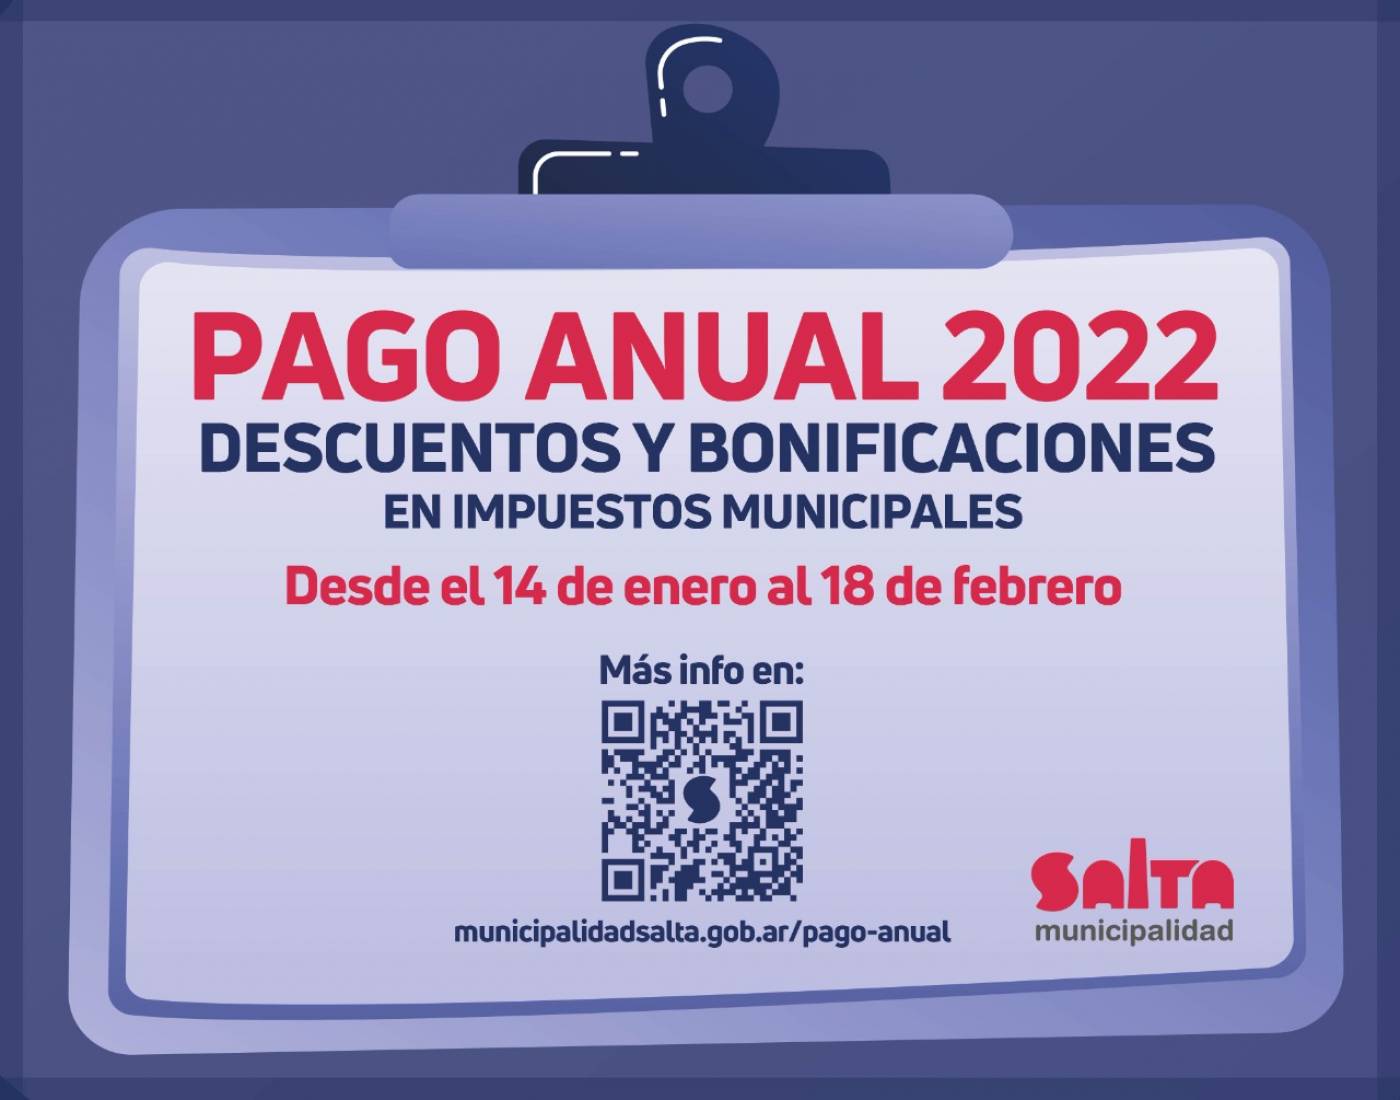 Desde este viernes entra en vigencia el Pago Anual de impuestos municipales 2022